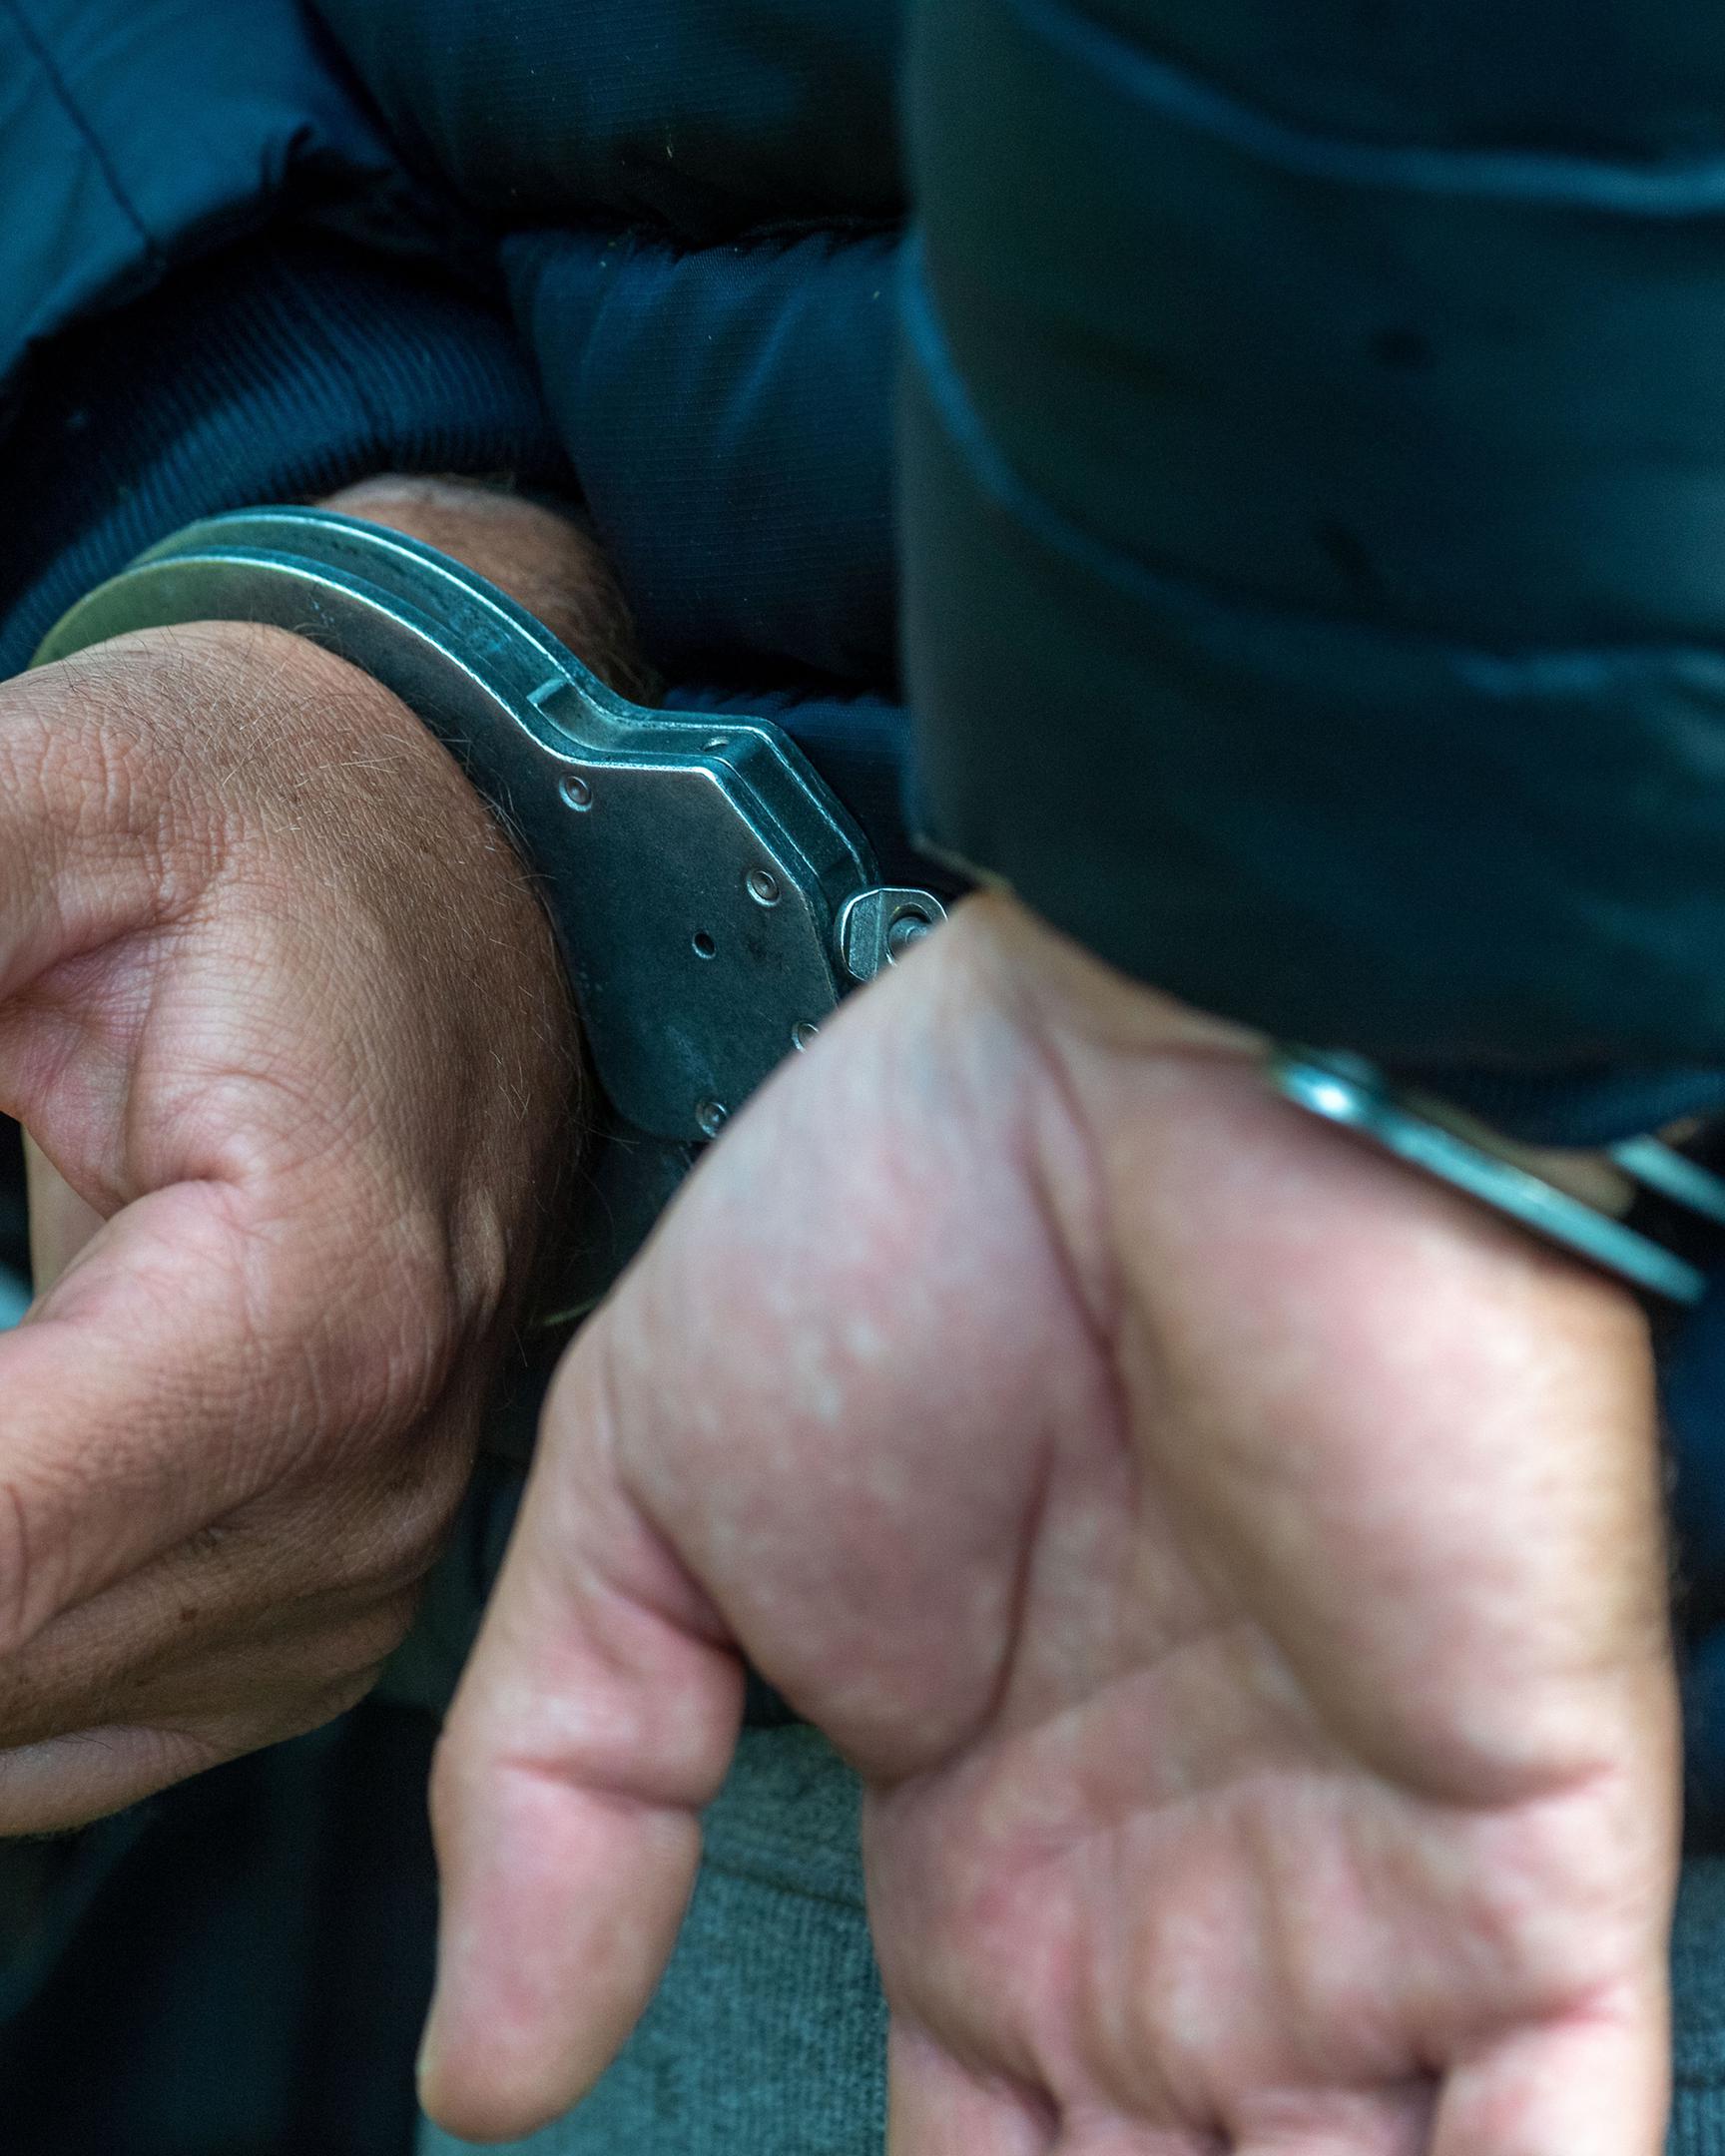 Nach mehr als einjährigen Ermittlungen der Luxemburger Kriminalpolizei klickten vergangene Woche die Handschellen.